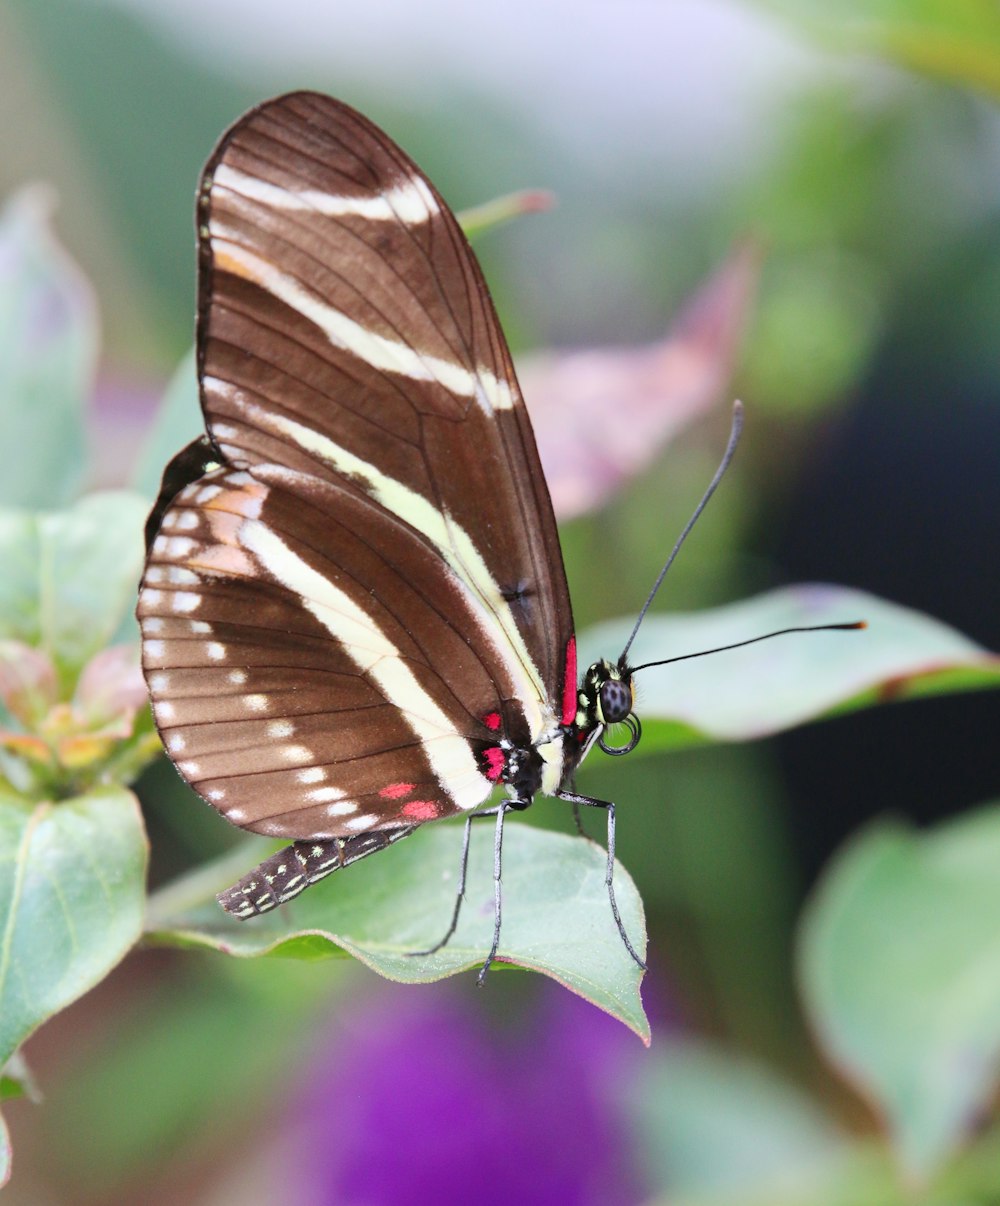 Una mariposa marrón y blanca sentada sobre una hoja verde